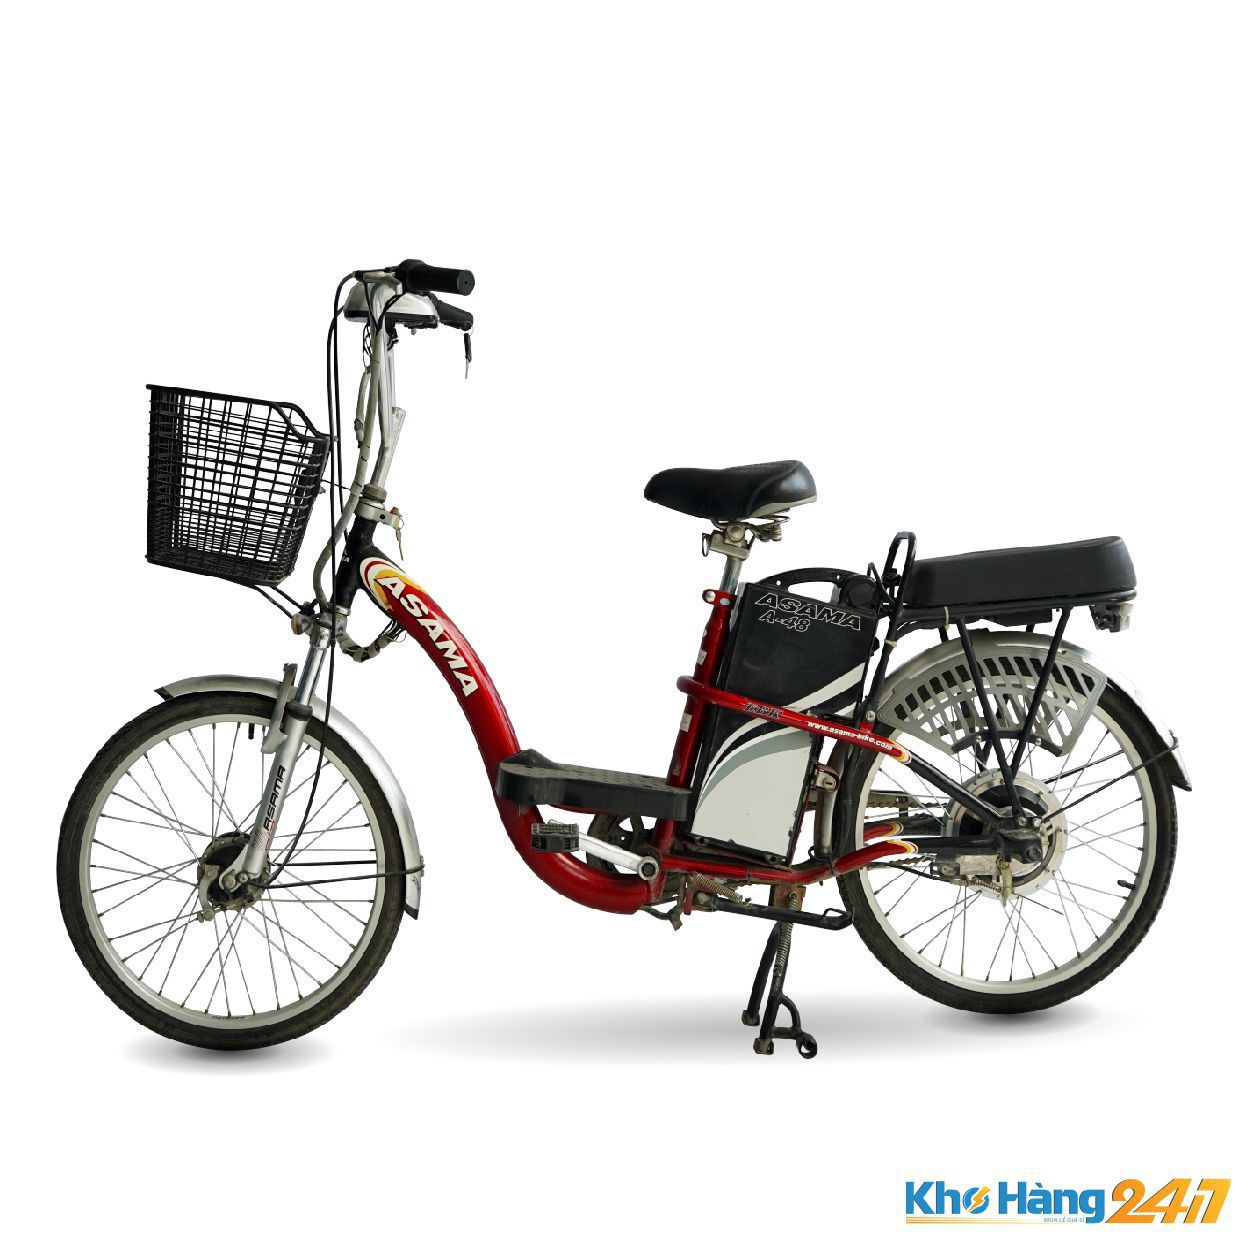 Xe dap dien Asama A 48 do 02 - Mua xe đạp điện cũ giá rẻ TpHCM chính hãng uy tín chất lượng